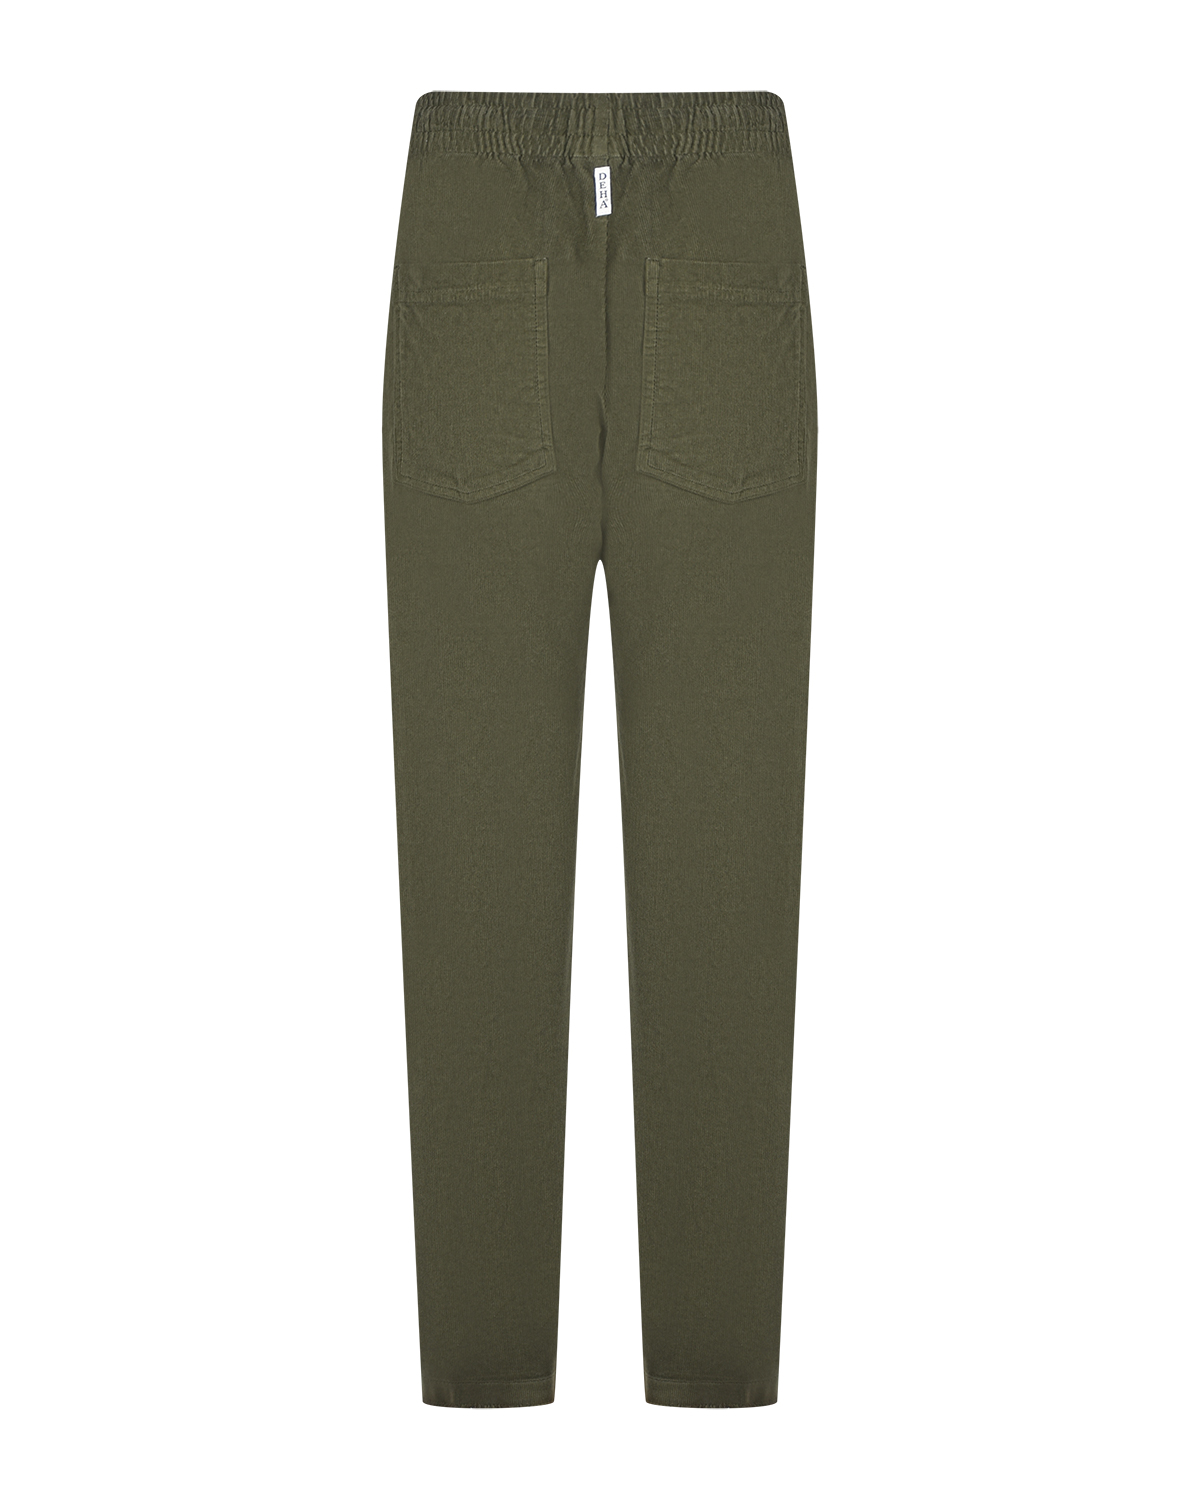 Вельветовые брюки оливкового цвета Deha, размер 44 - фото 2